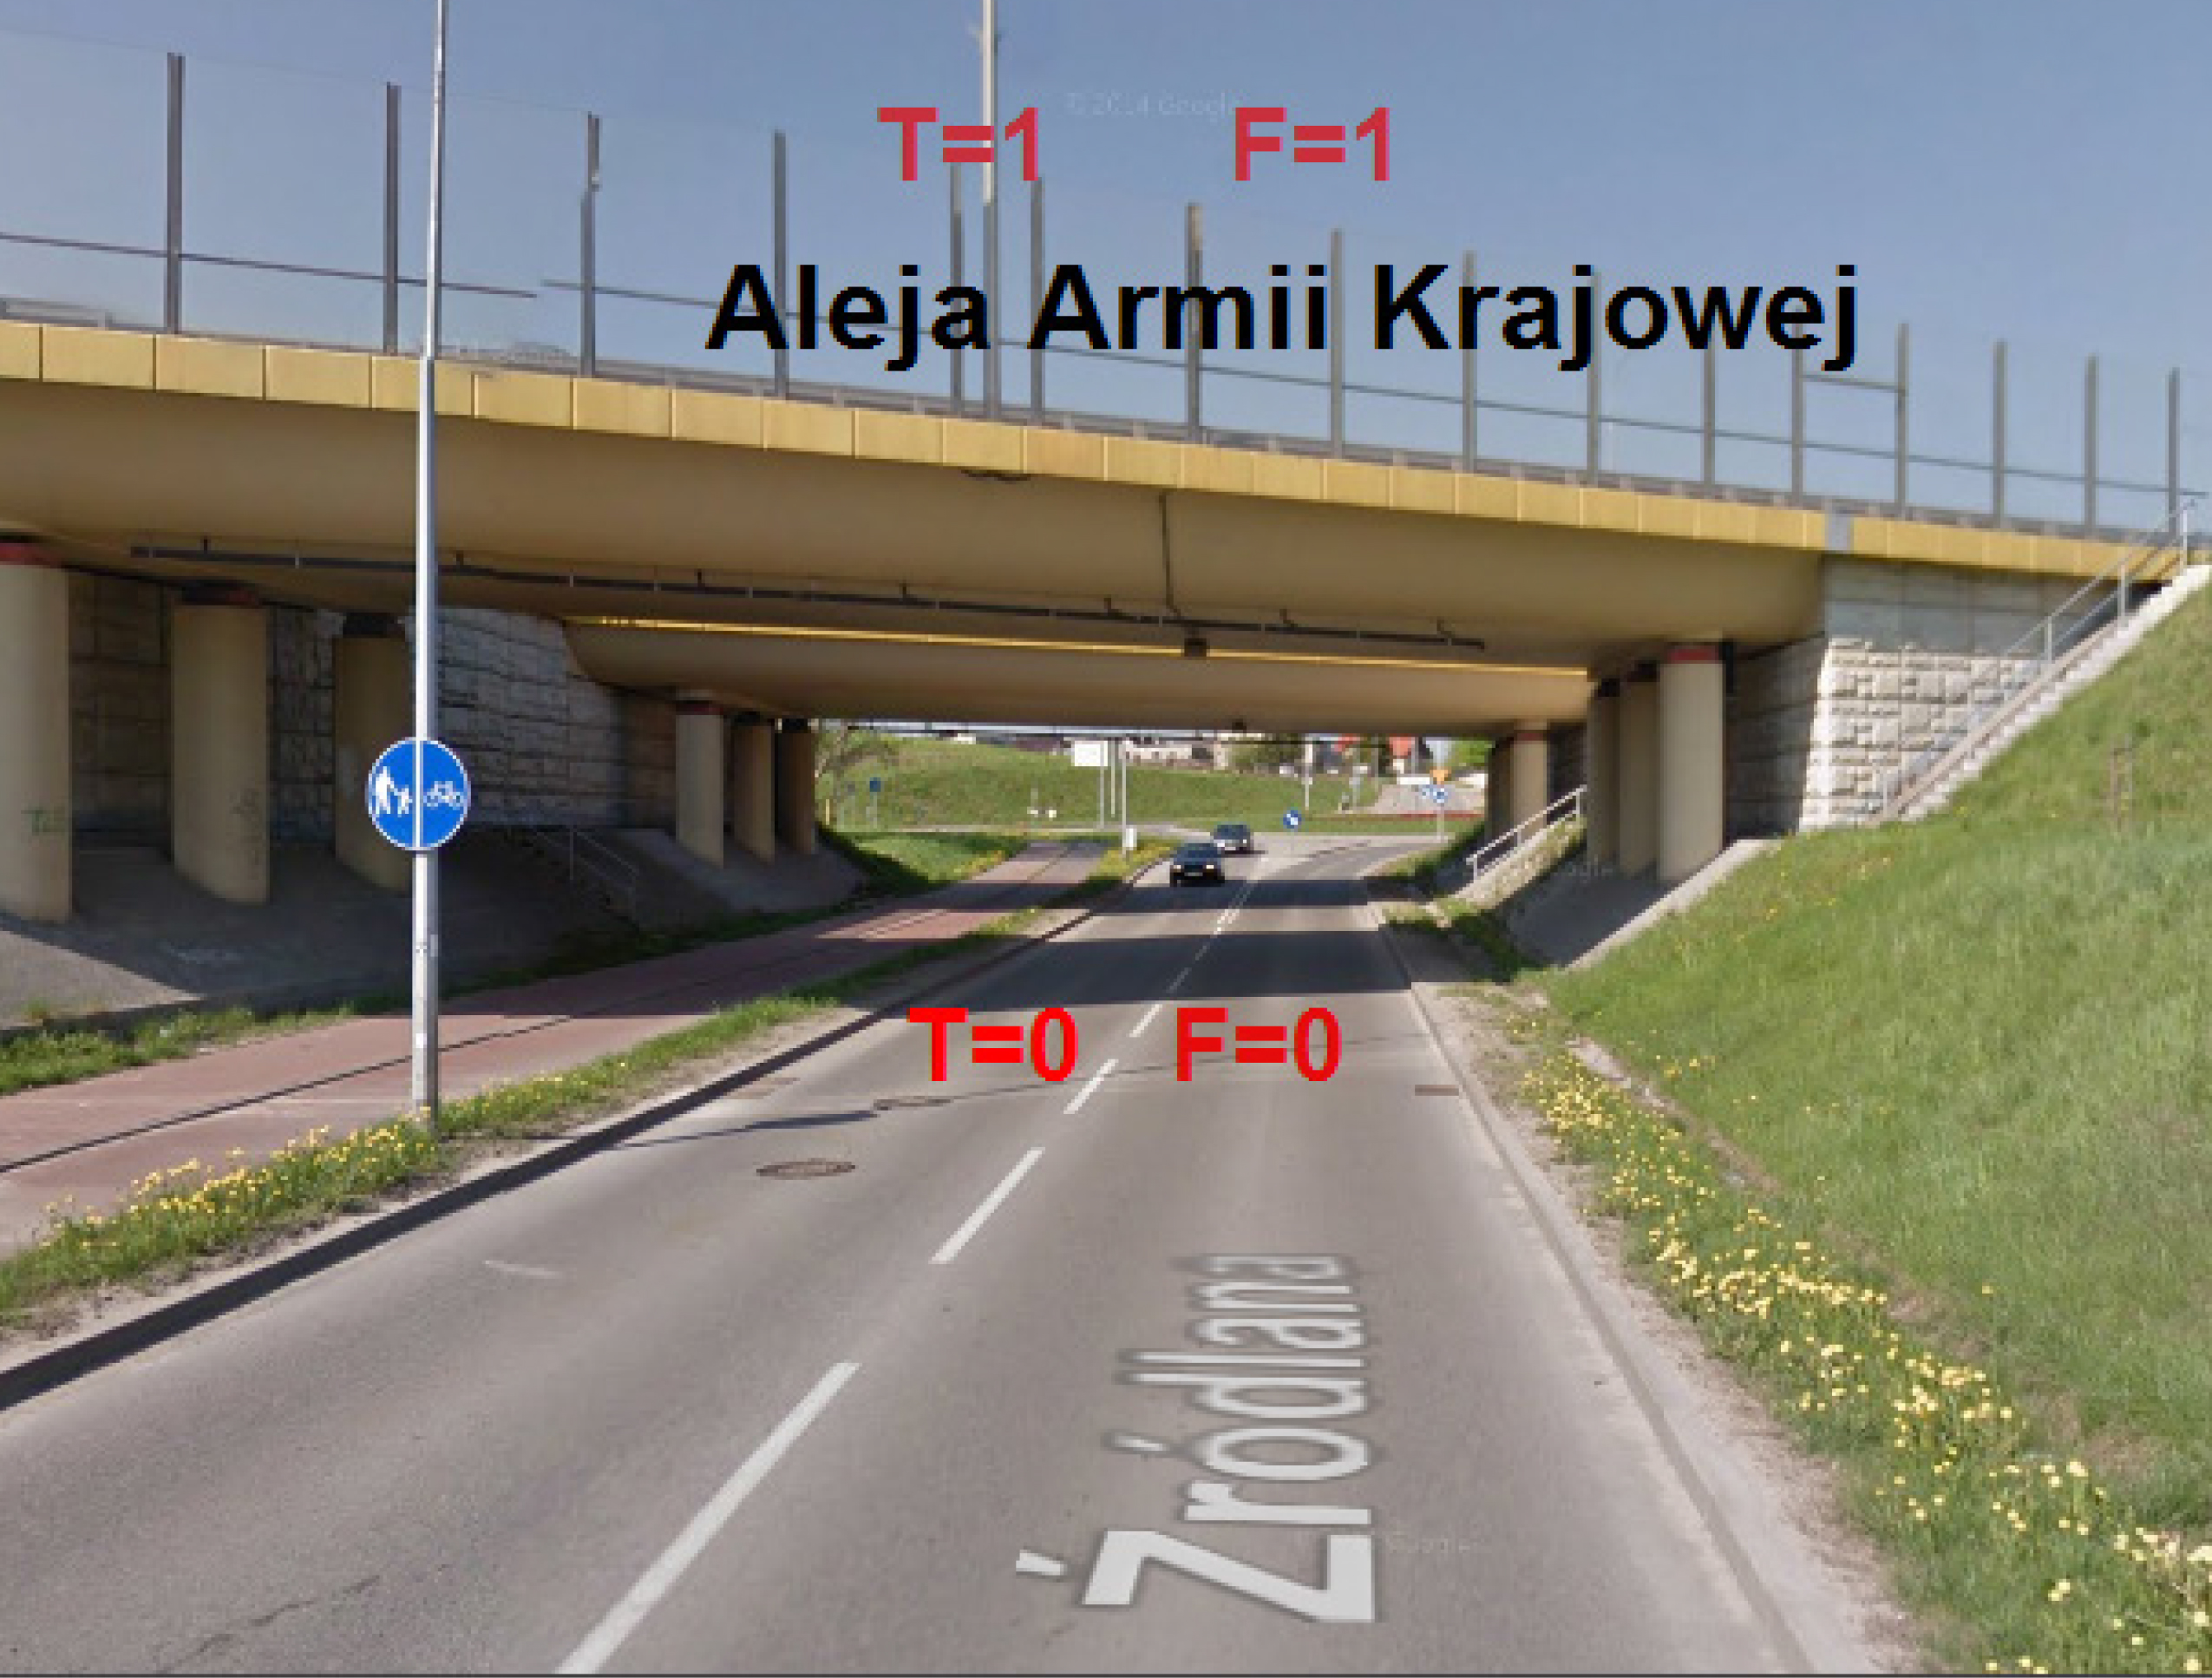 Rys.1. Przykład określania poziomów dróg – opracowanie własne na podstawie danych Street View.